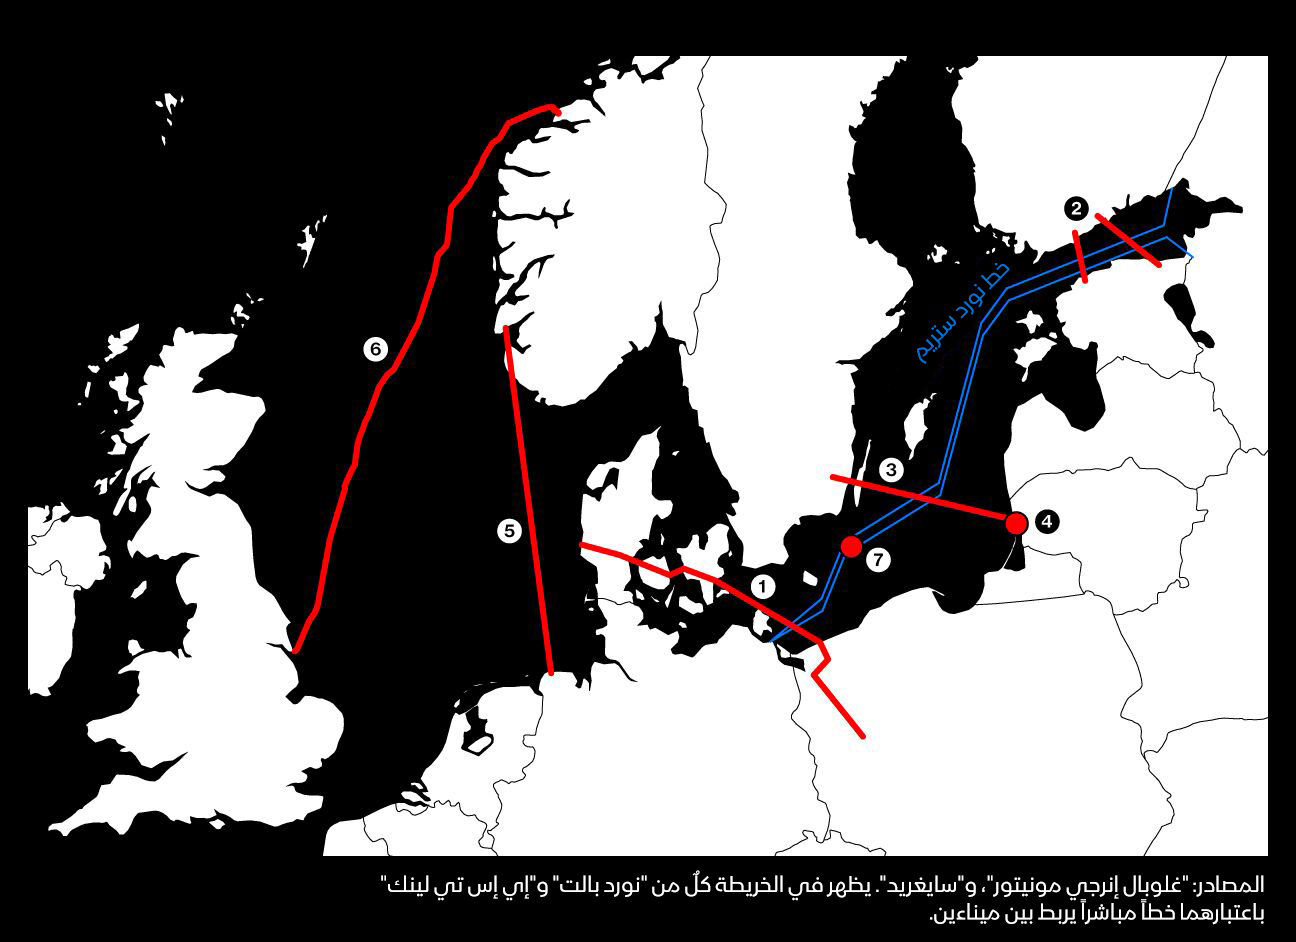 خريطة توضح إمدادات الغاز عبر خطوط الأنابيب، ويظهر بها خط نورد ستريم